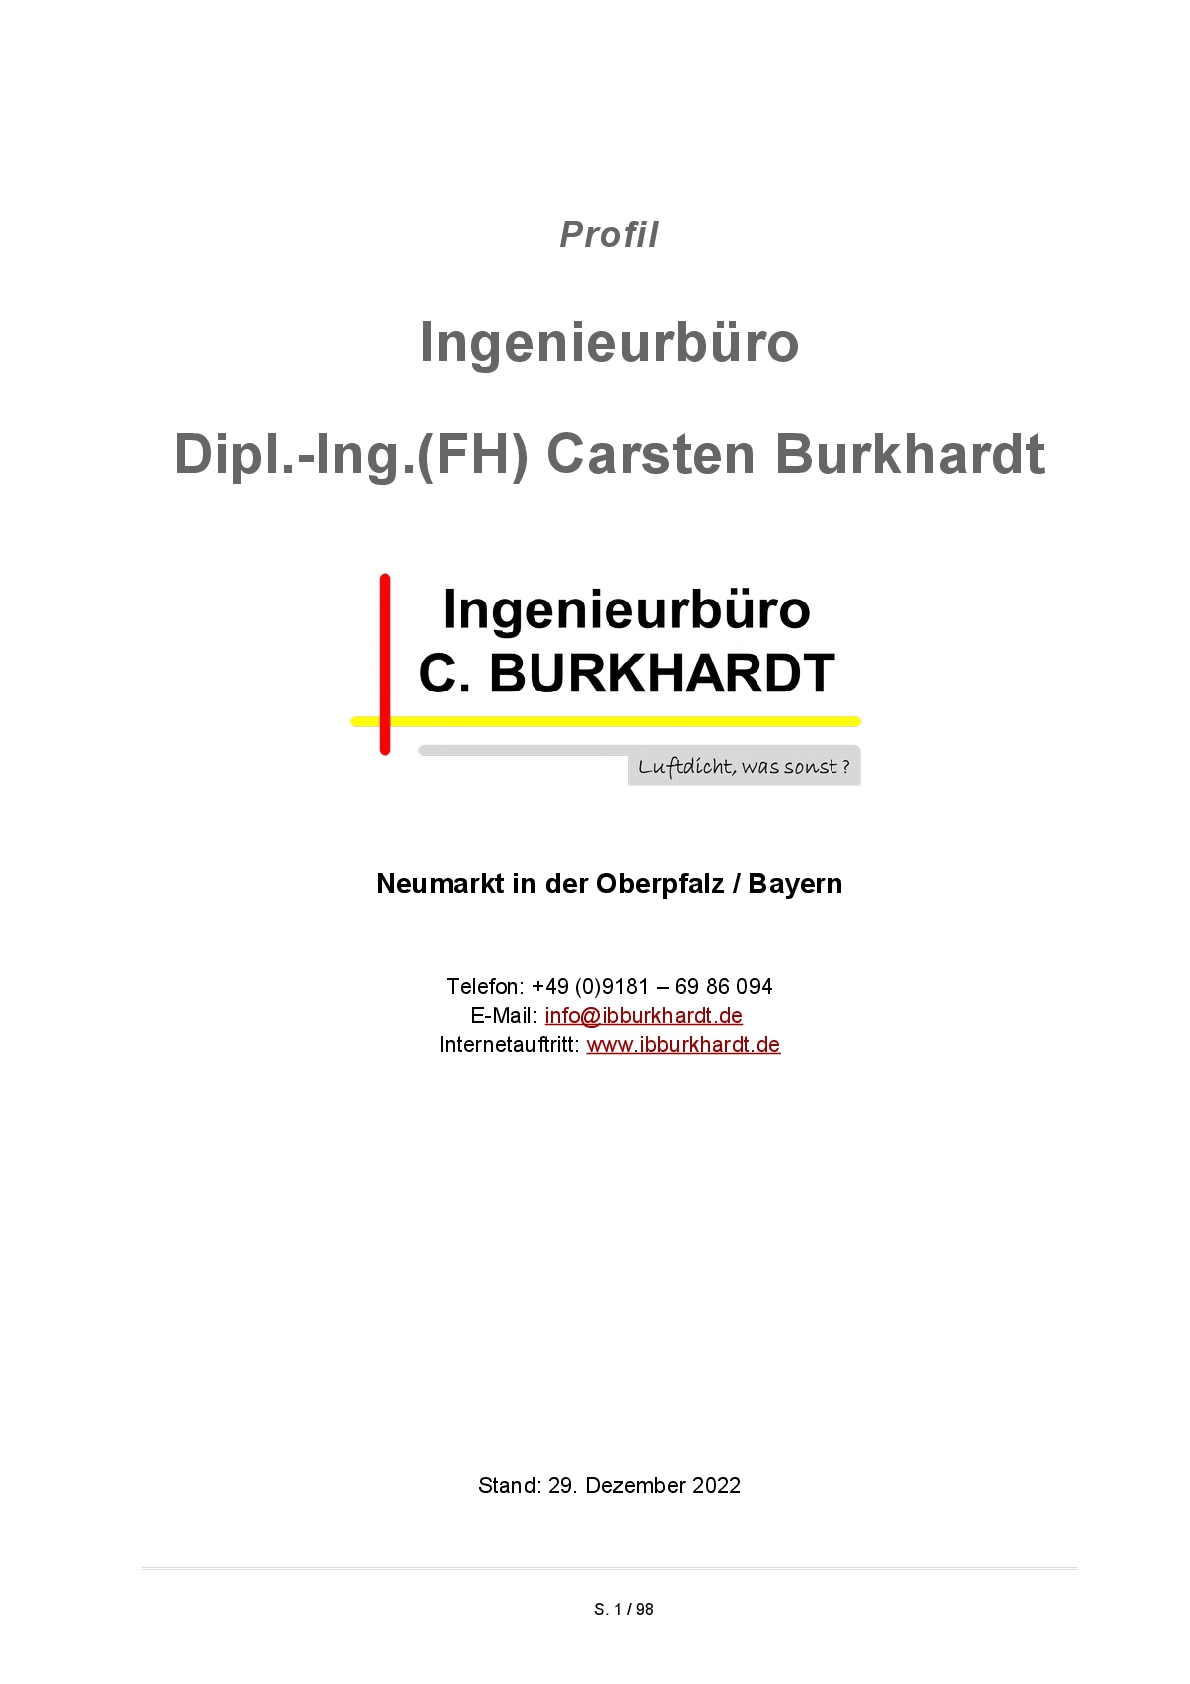 https://ibburkhardt.de/dokumente/Profil_Ingenieurbuero_Carsten_Burkhardt_Neumarkt_Oberpfalz_zum_Download.pdf